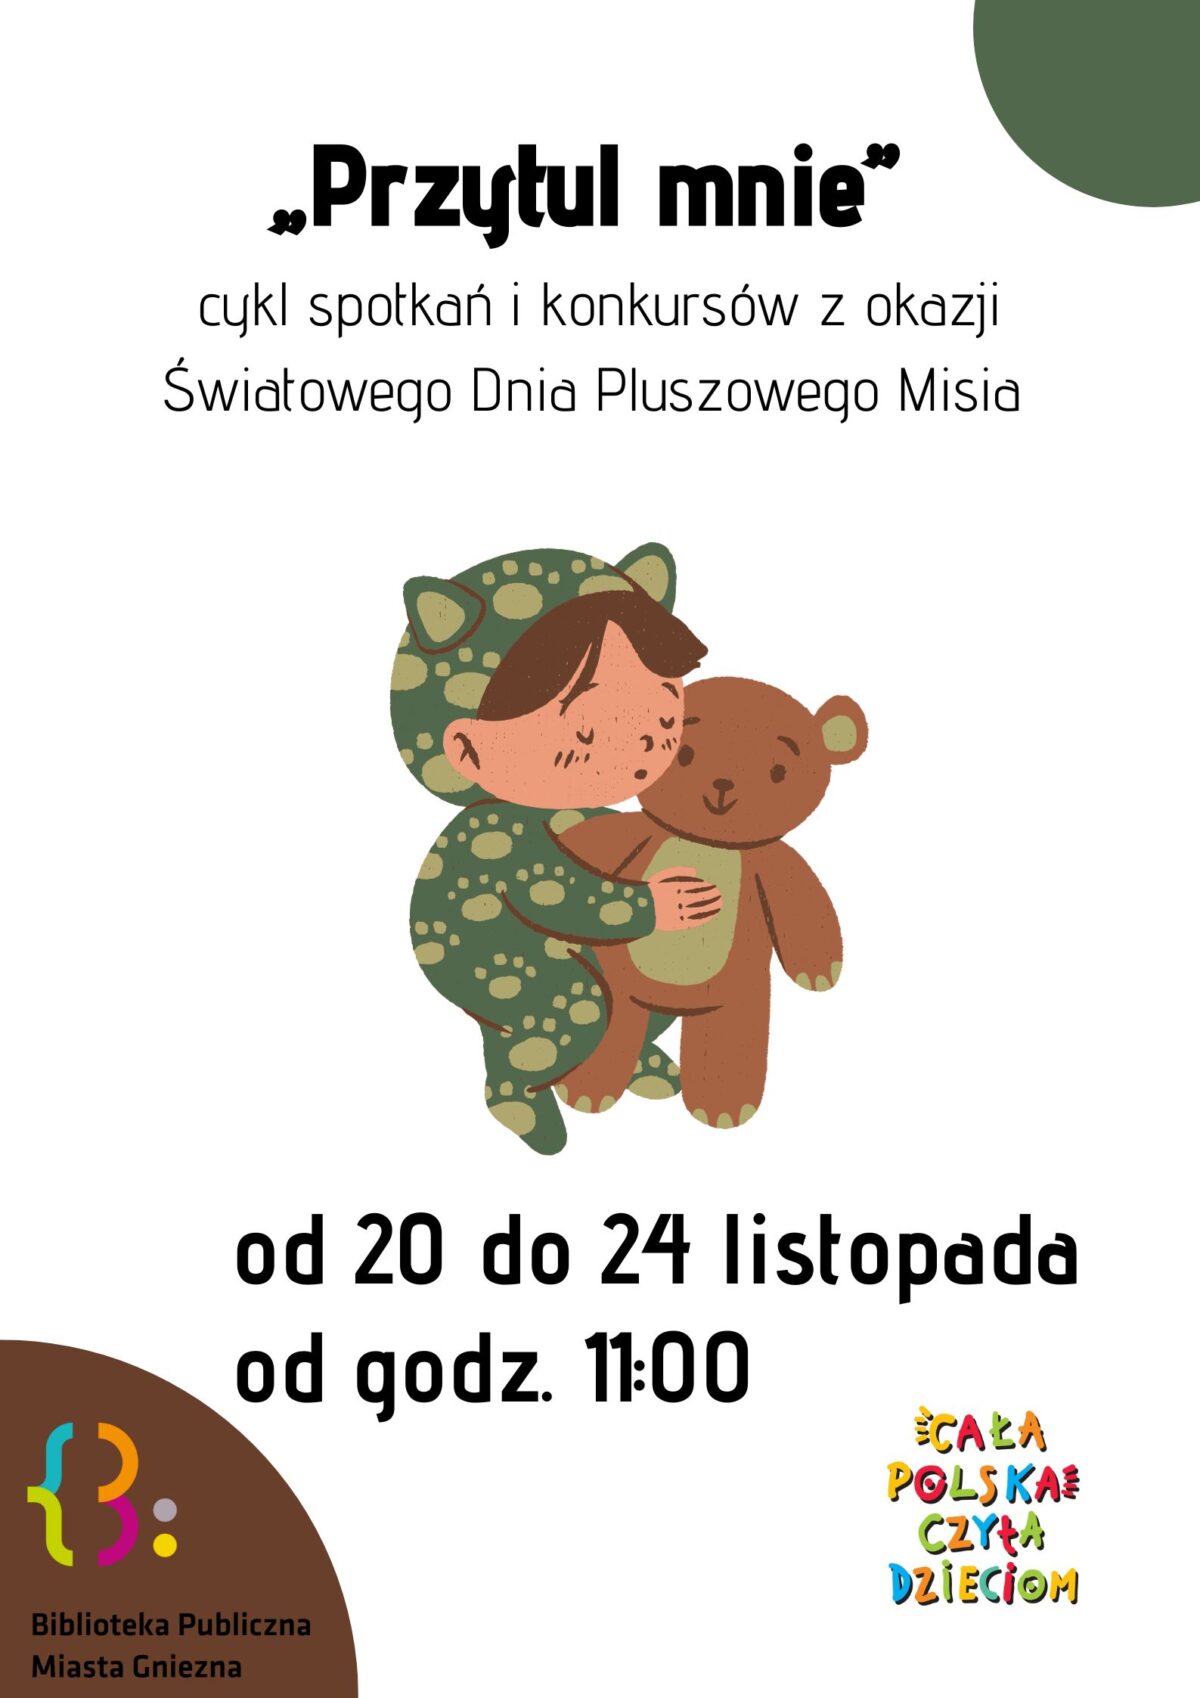 “Przytul mnie” w ramach akcji Cała Polska Czyta Dzieciom